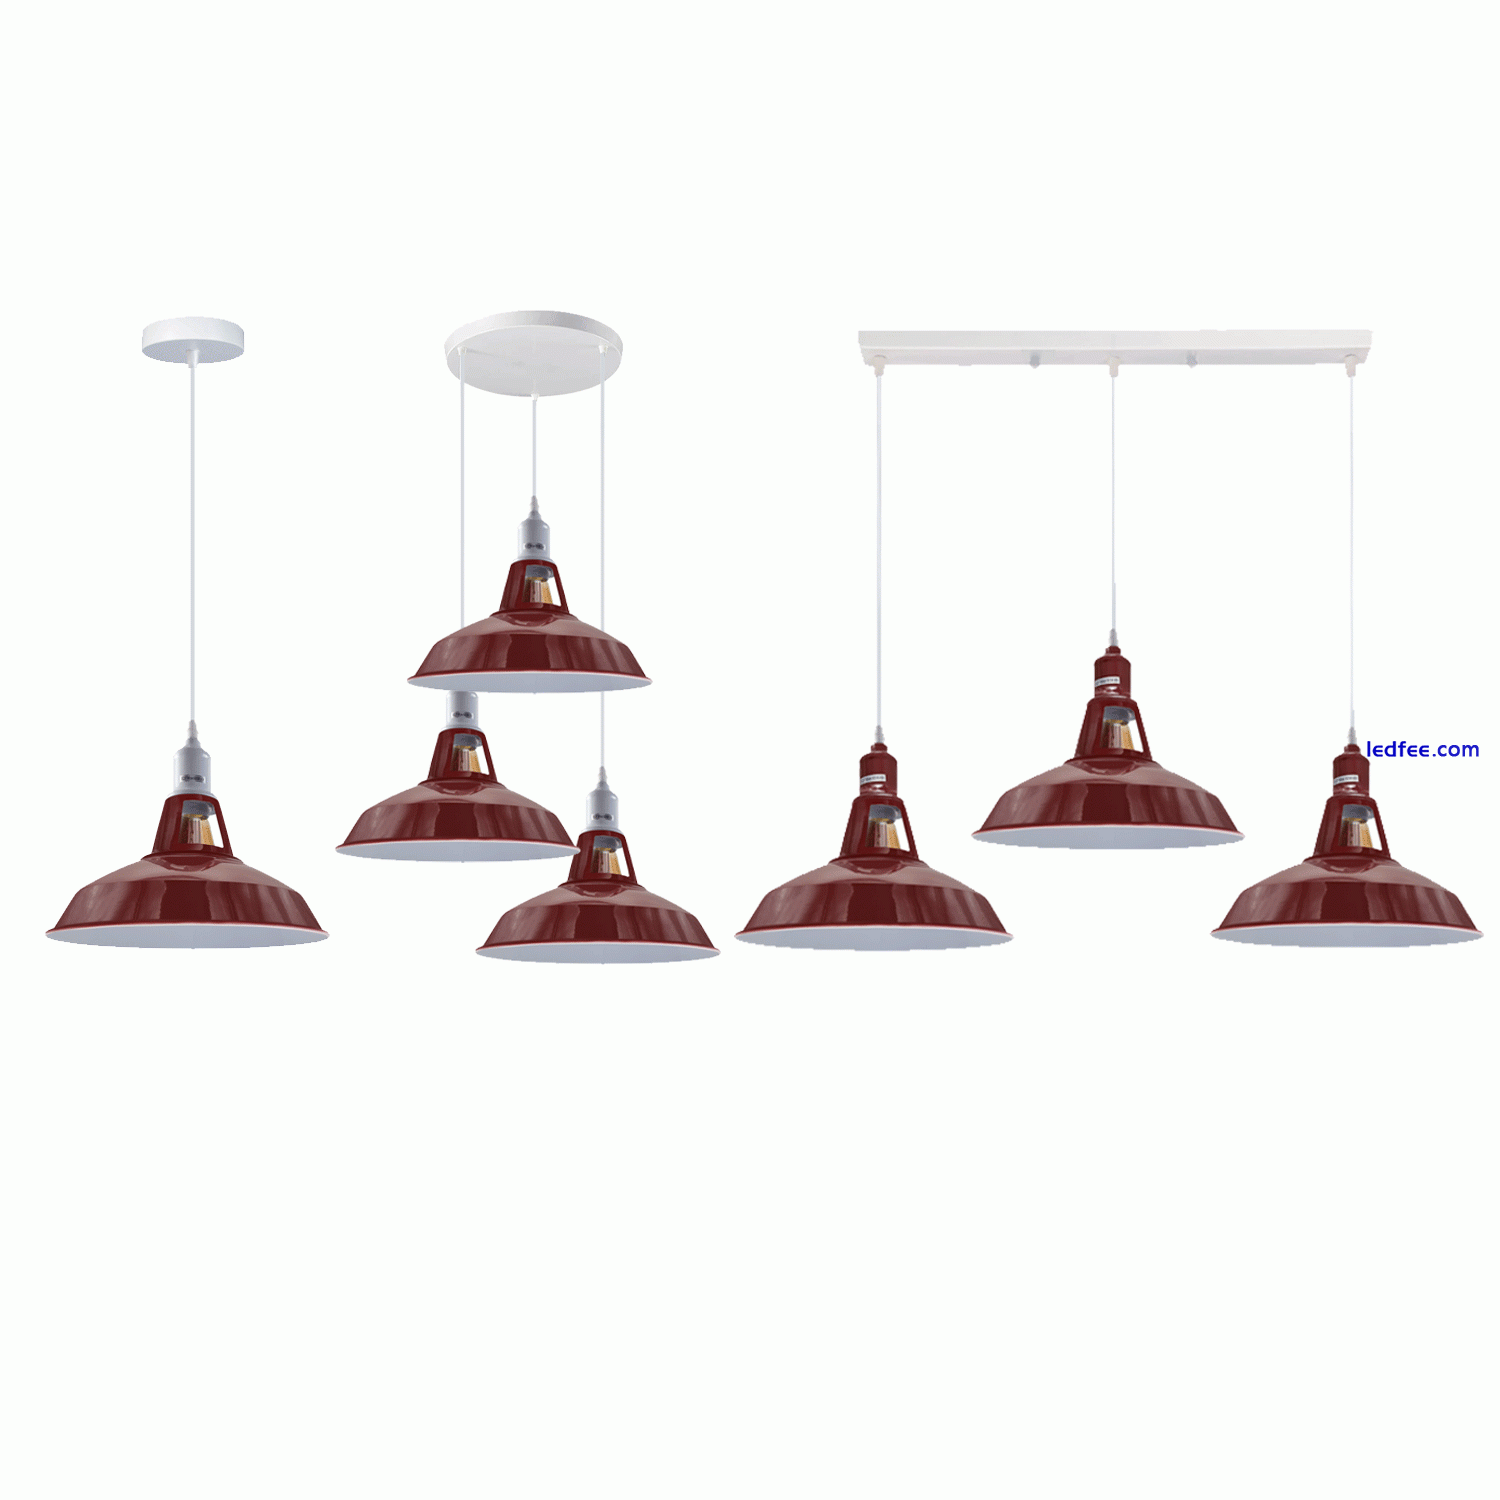 Vintage Industrial Pendant Light Modern Hanging Retro Lamp LED Ceiling Lights UK 0 